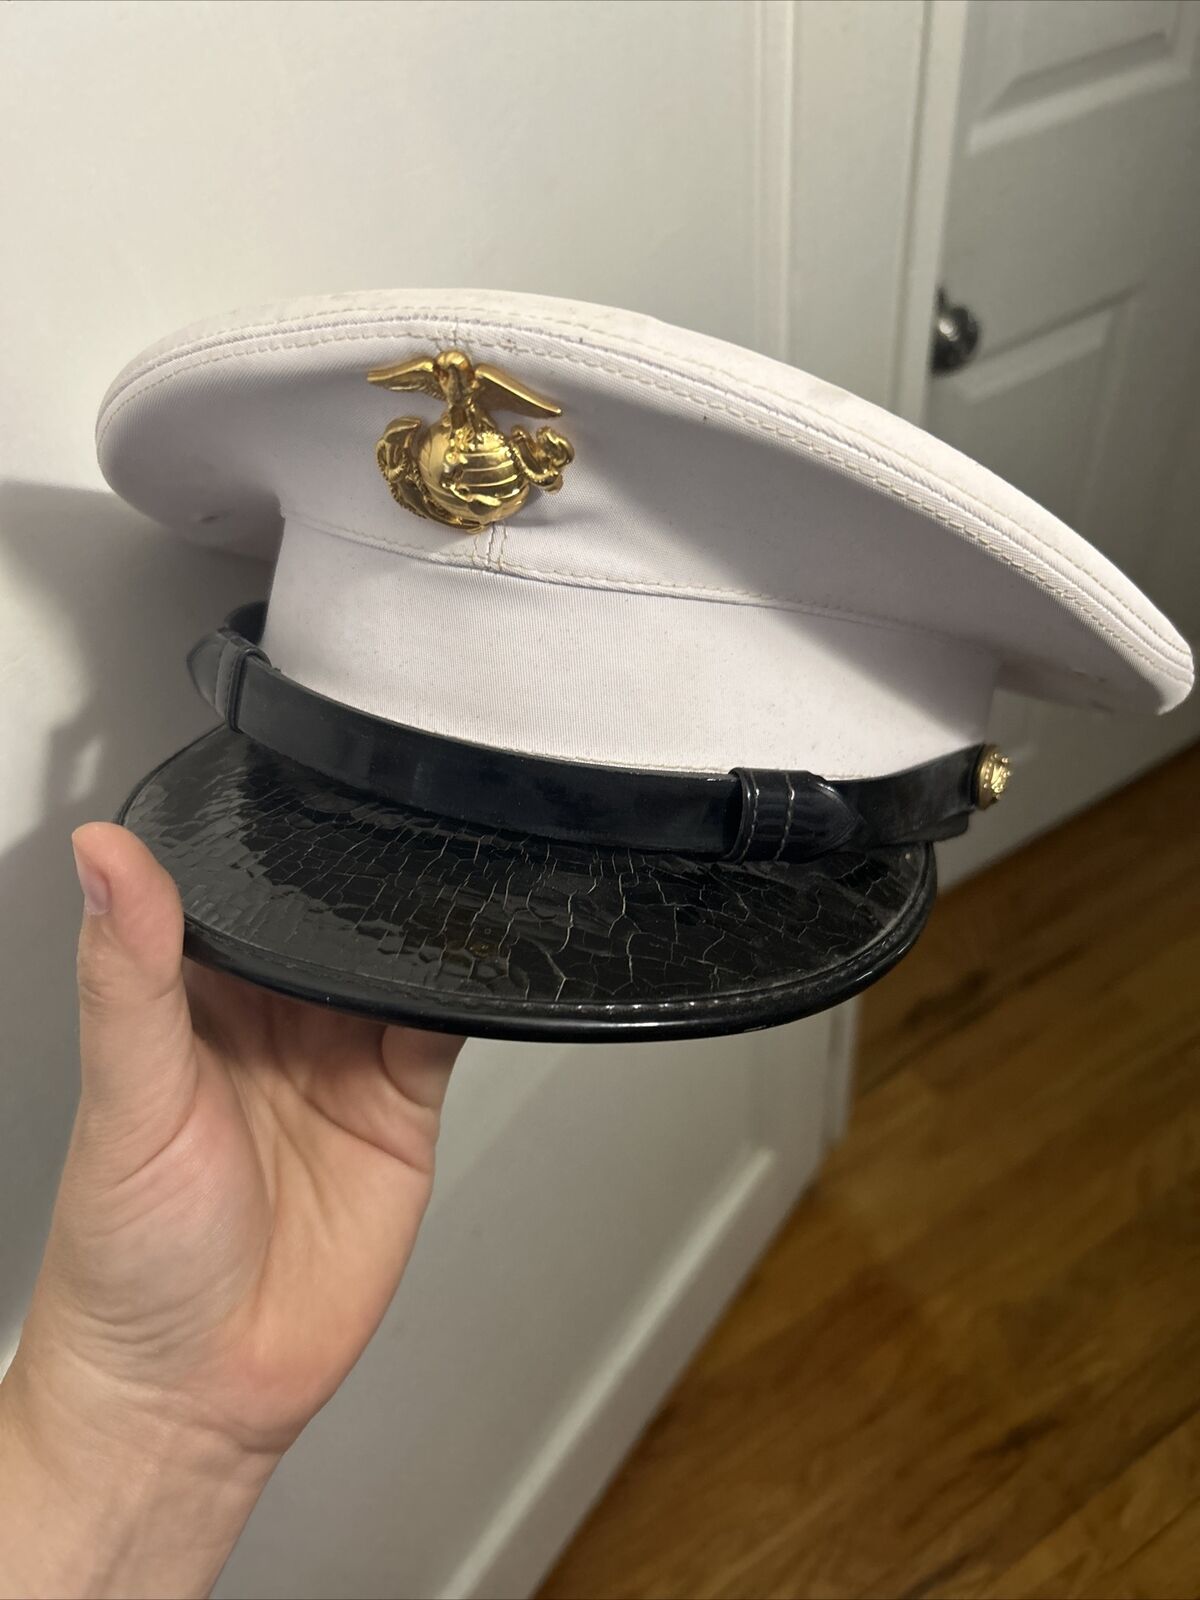 US Marines King Form Dress Cap - WORN BRIM